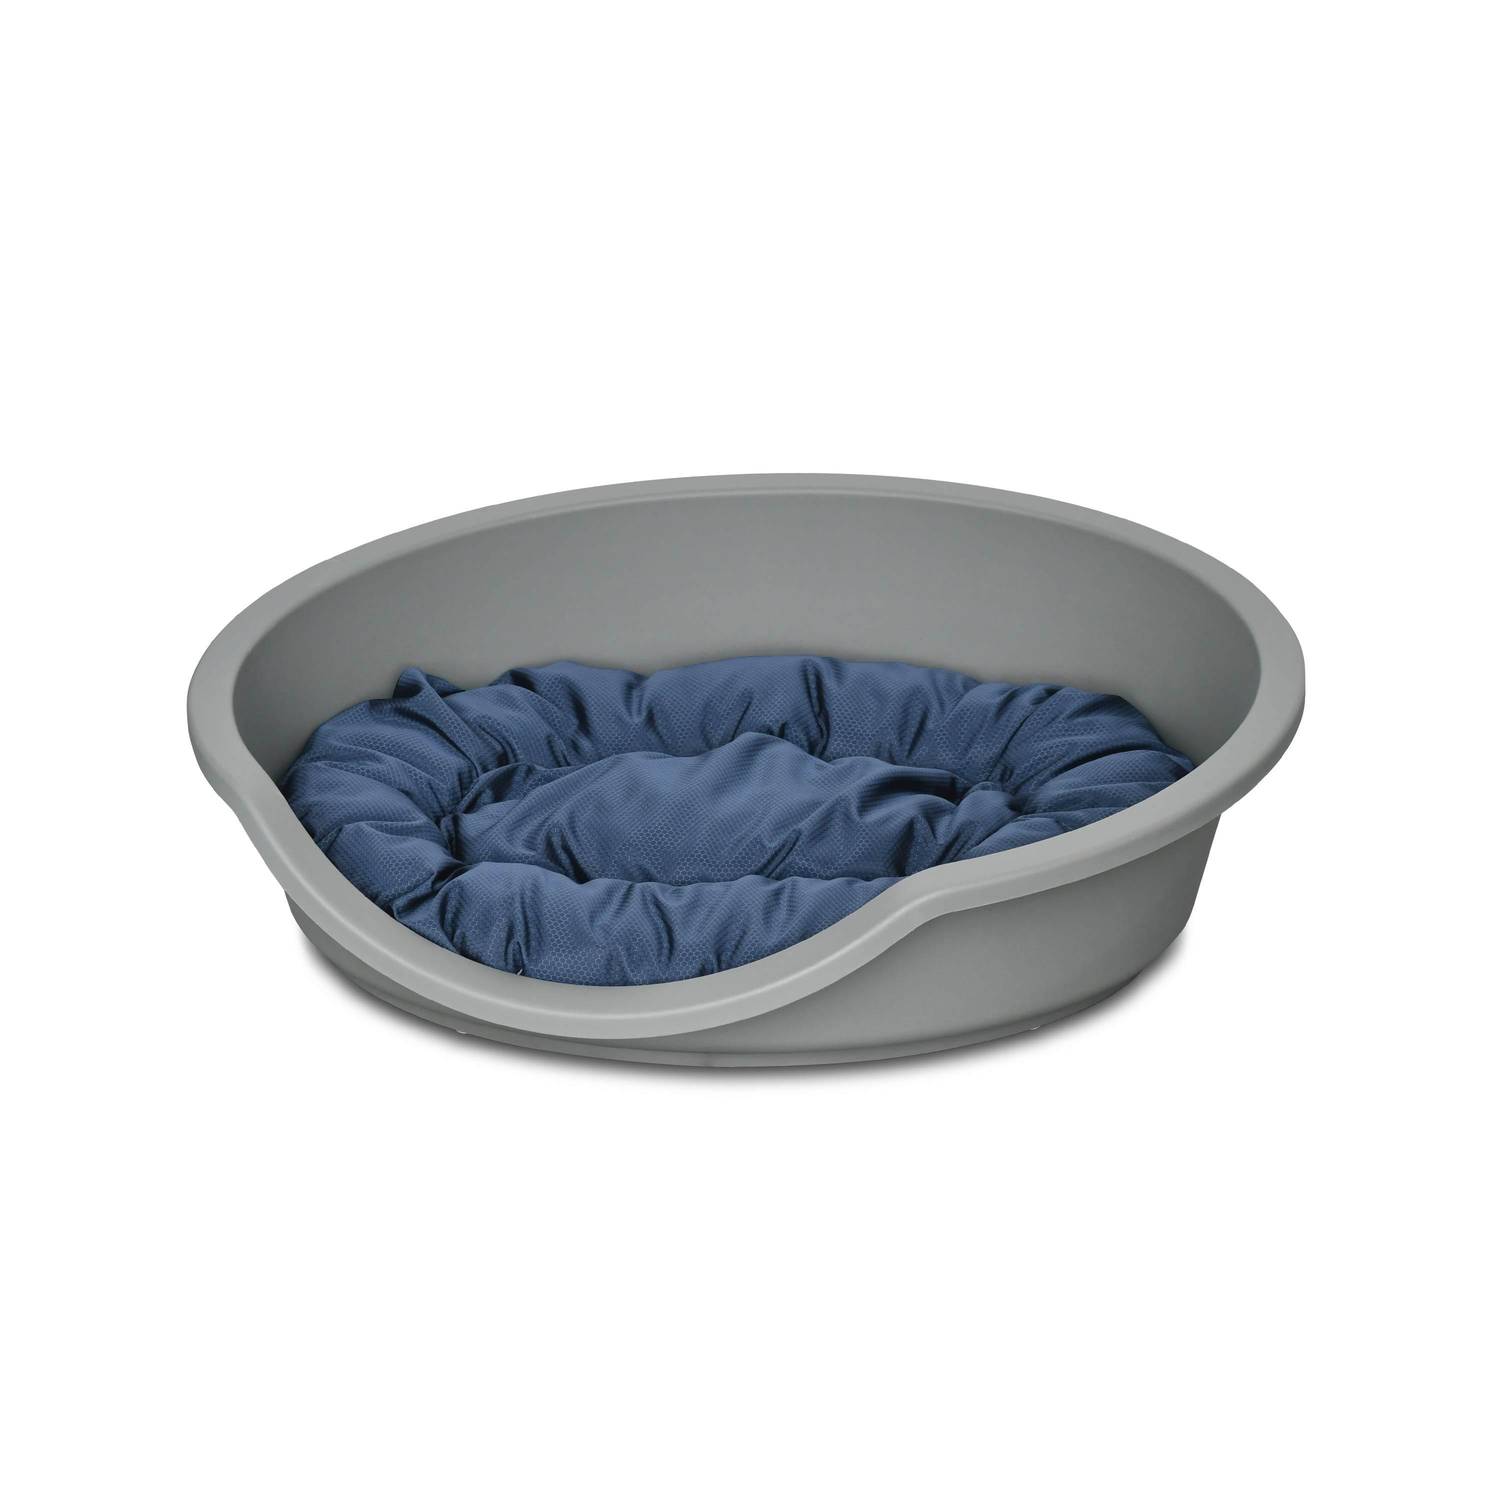 Corbeille en plastique gris clair pour grand chien + Coussin en coton et en polyester gris et bleu marine 85 x 70 cm de forme ovale, taille L  Photo1